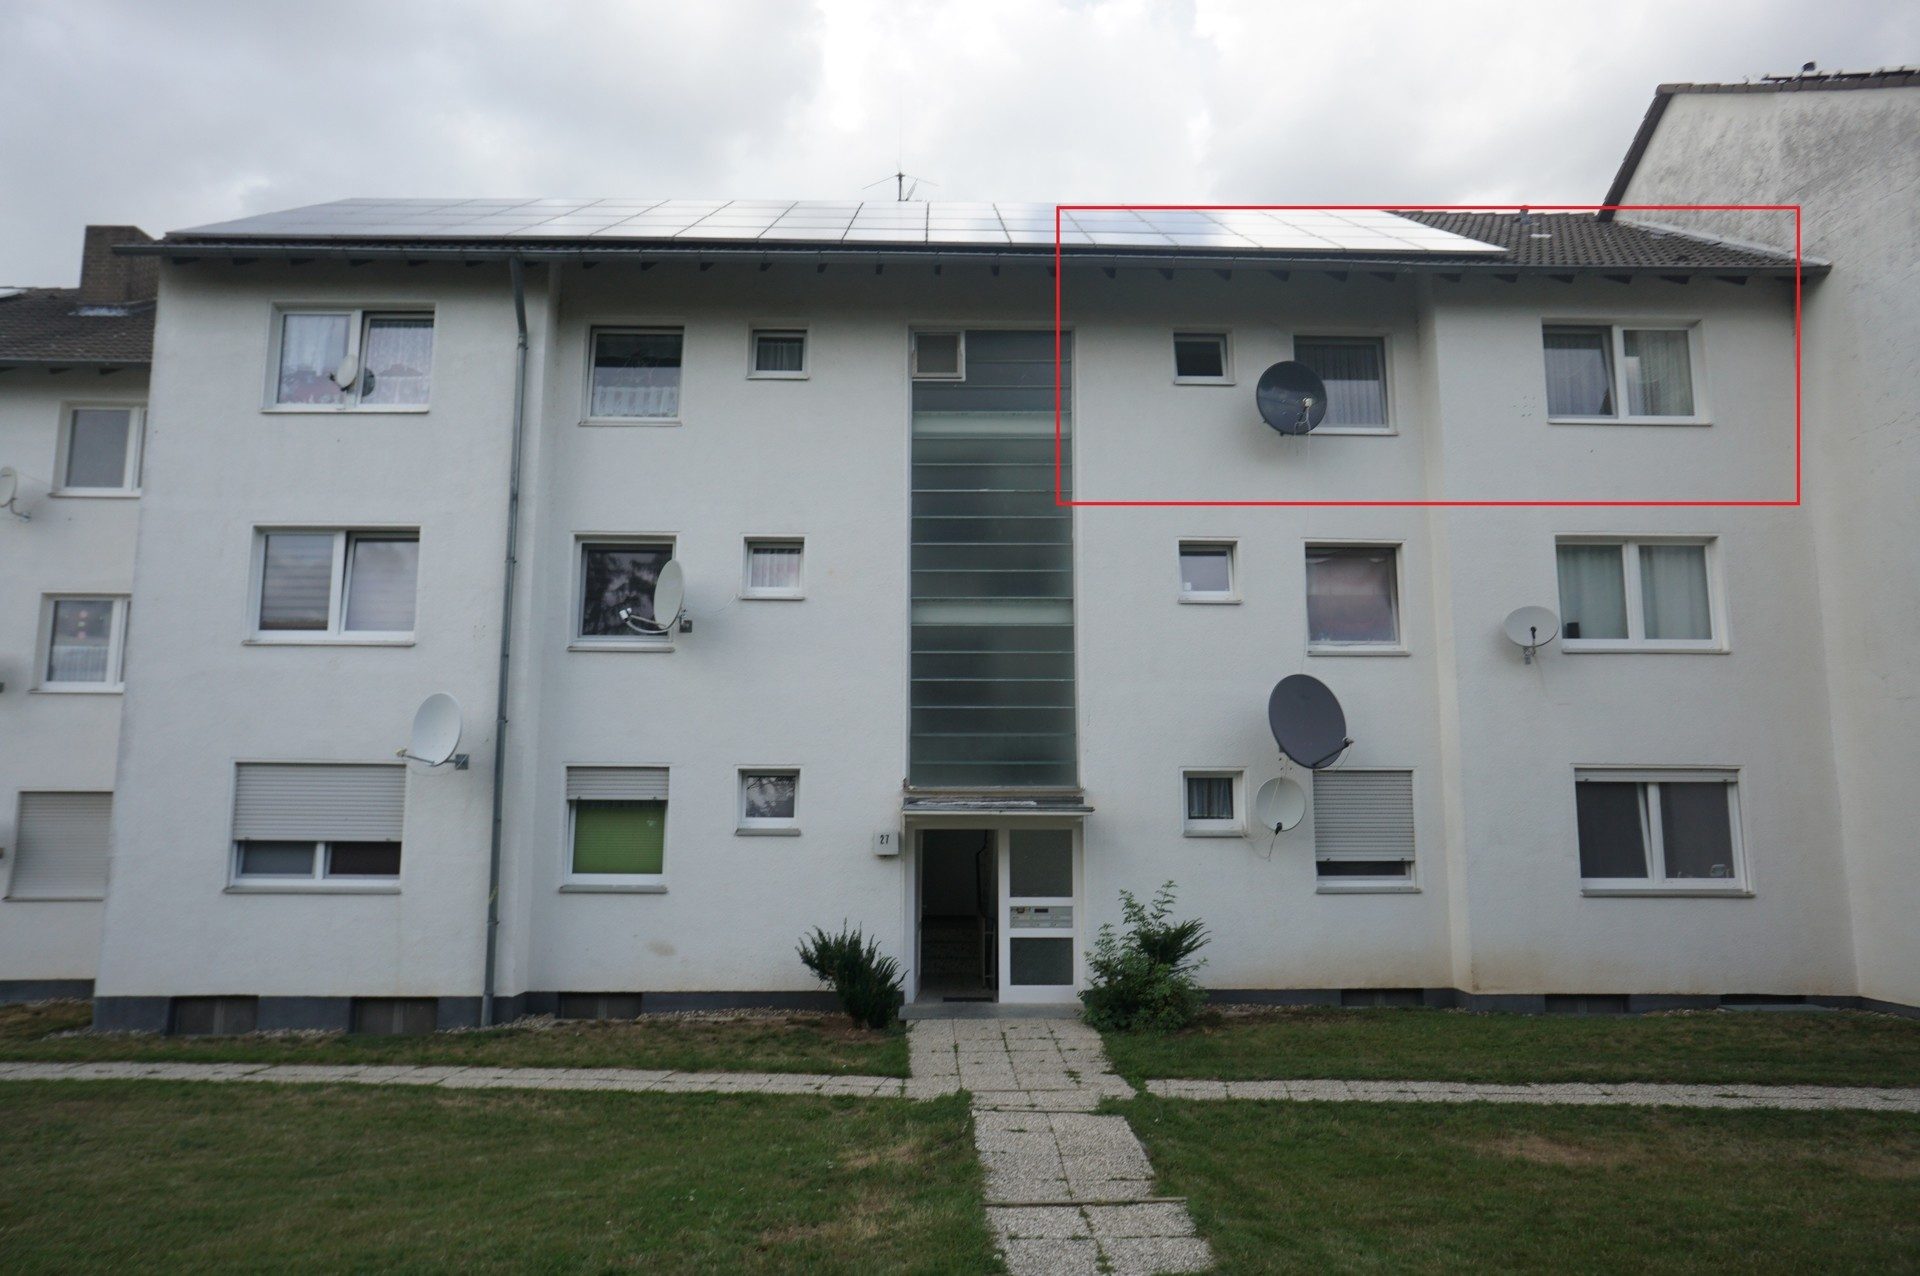 Immobilienangebot - Felsberg - Alle - Charmante 4-Zimmerwohnung mit Balkon in Felsberg-Gensungen!